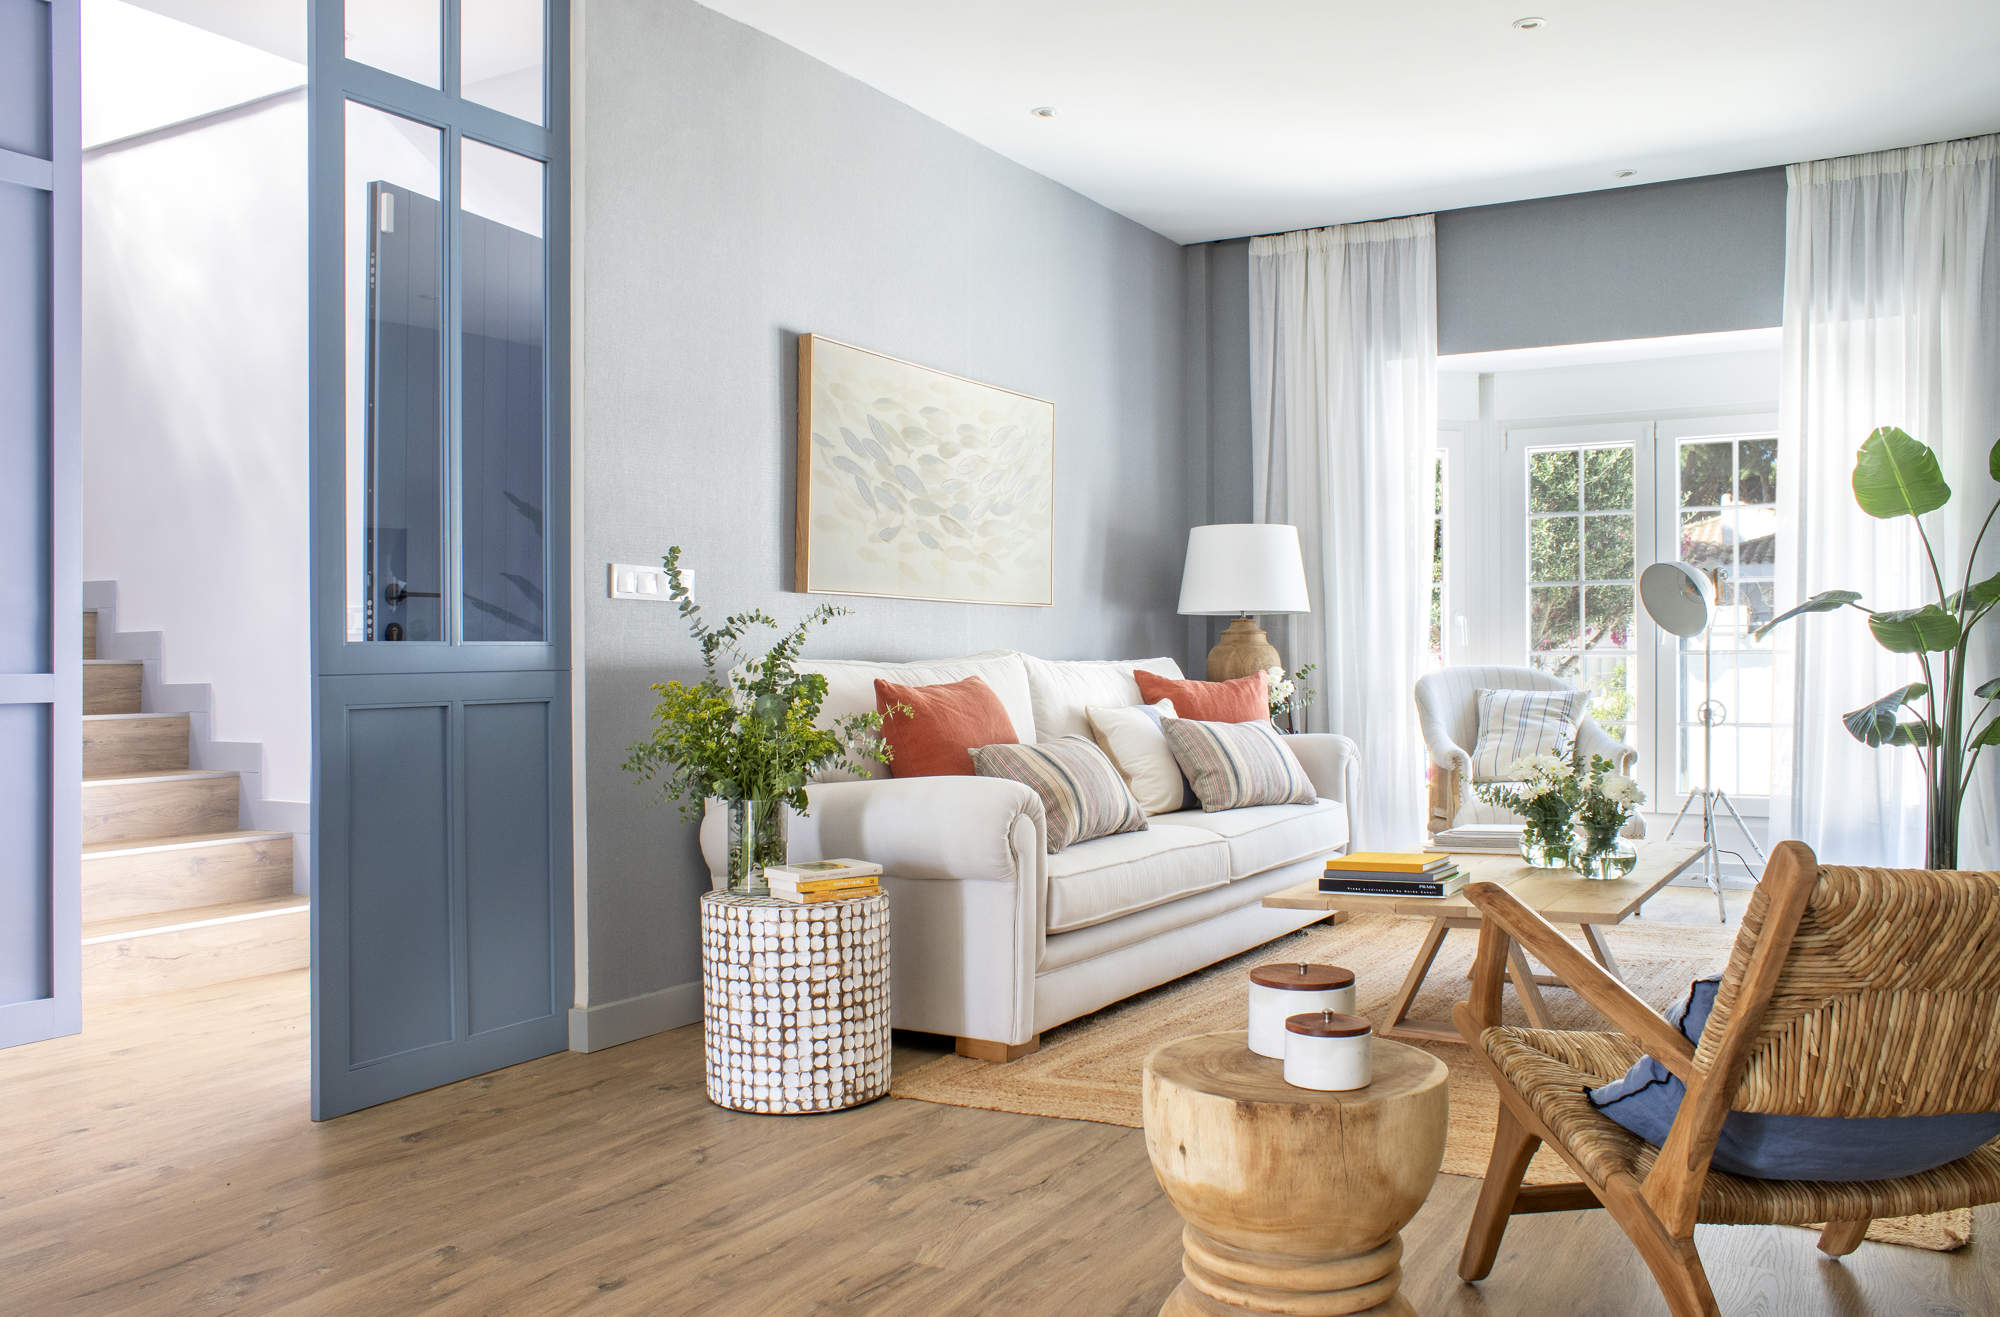 Un salón luminoso en tonos azules y blancos, con predominio de madera y detalles naturales con plantas.